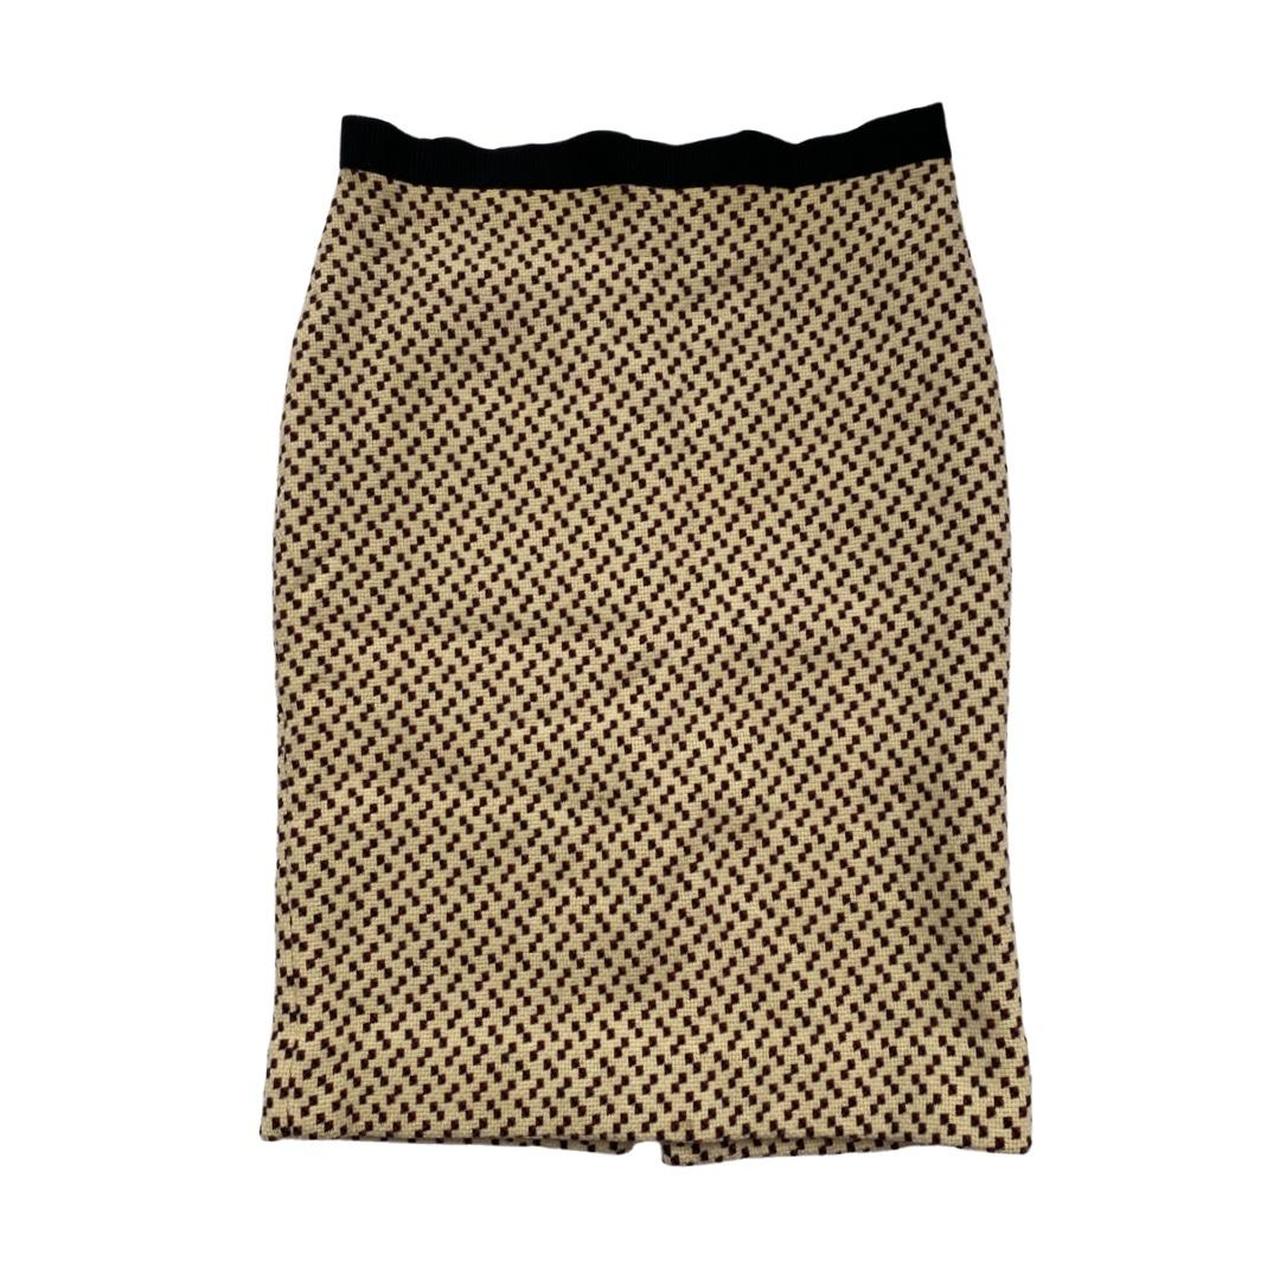 Miu Miu vintage FW 2000 thick knit skirt. Very... - Depop